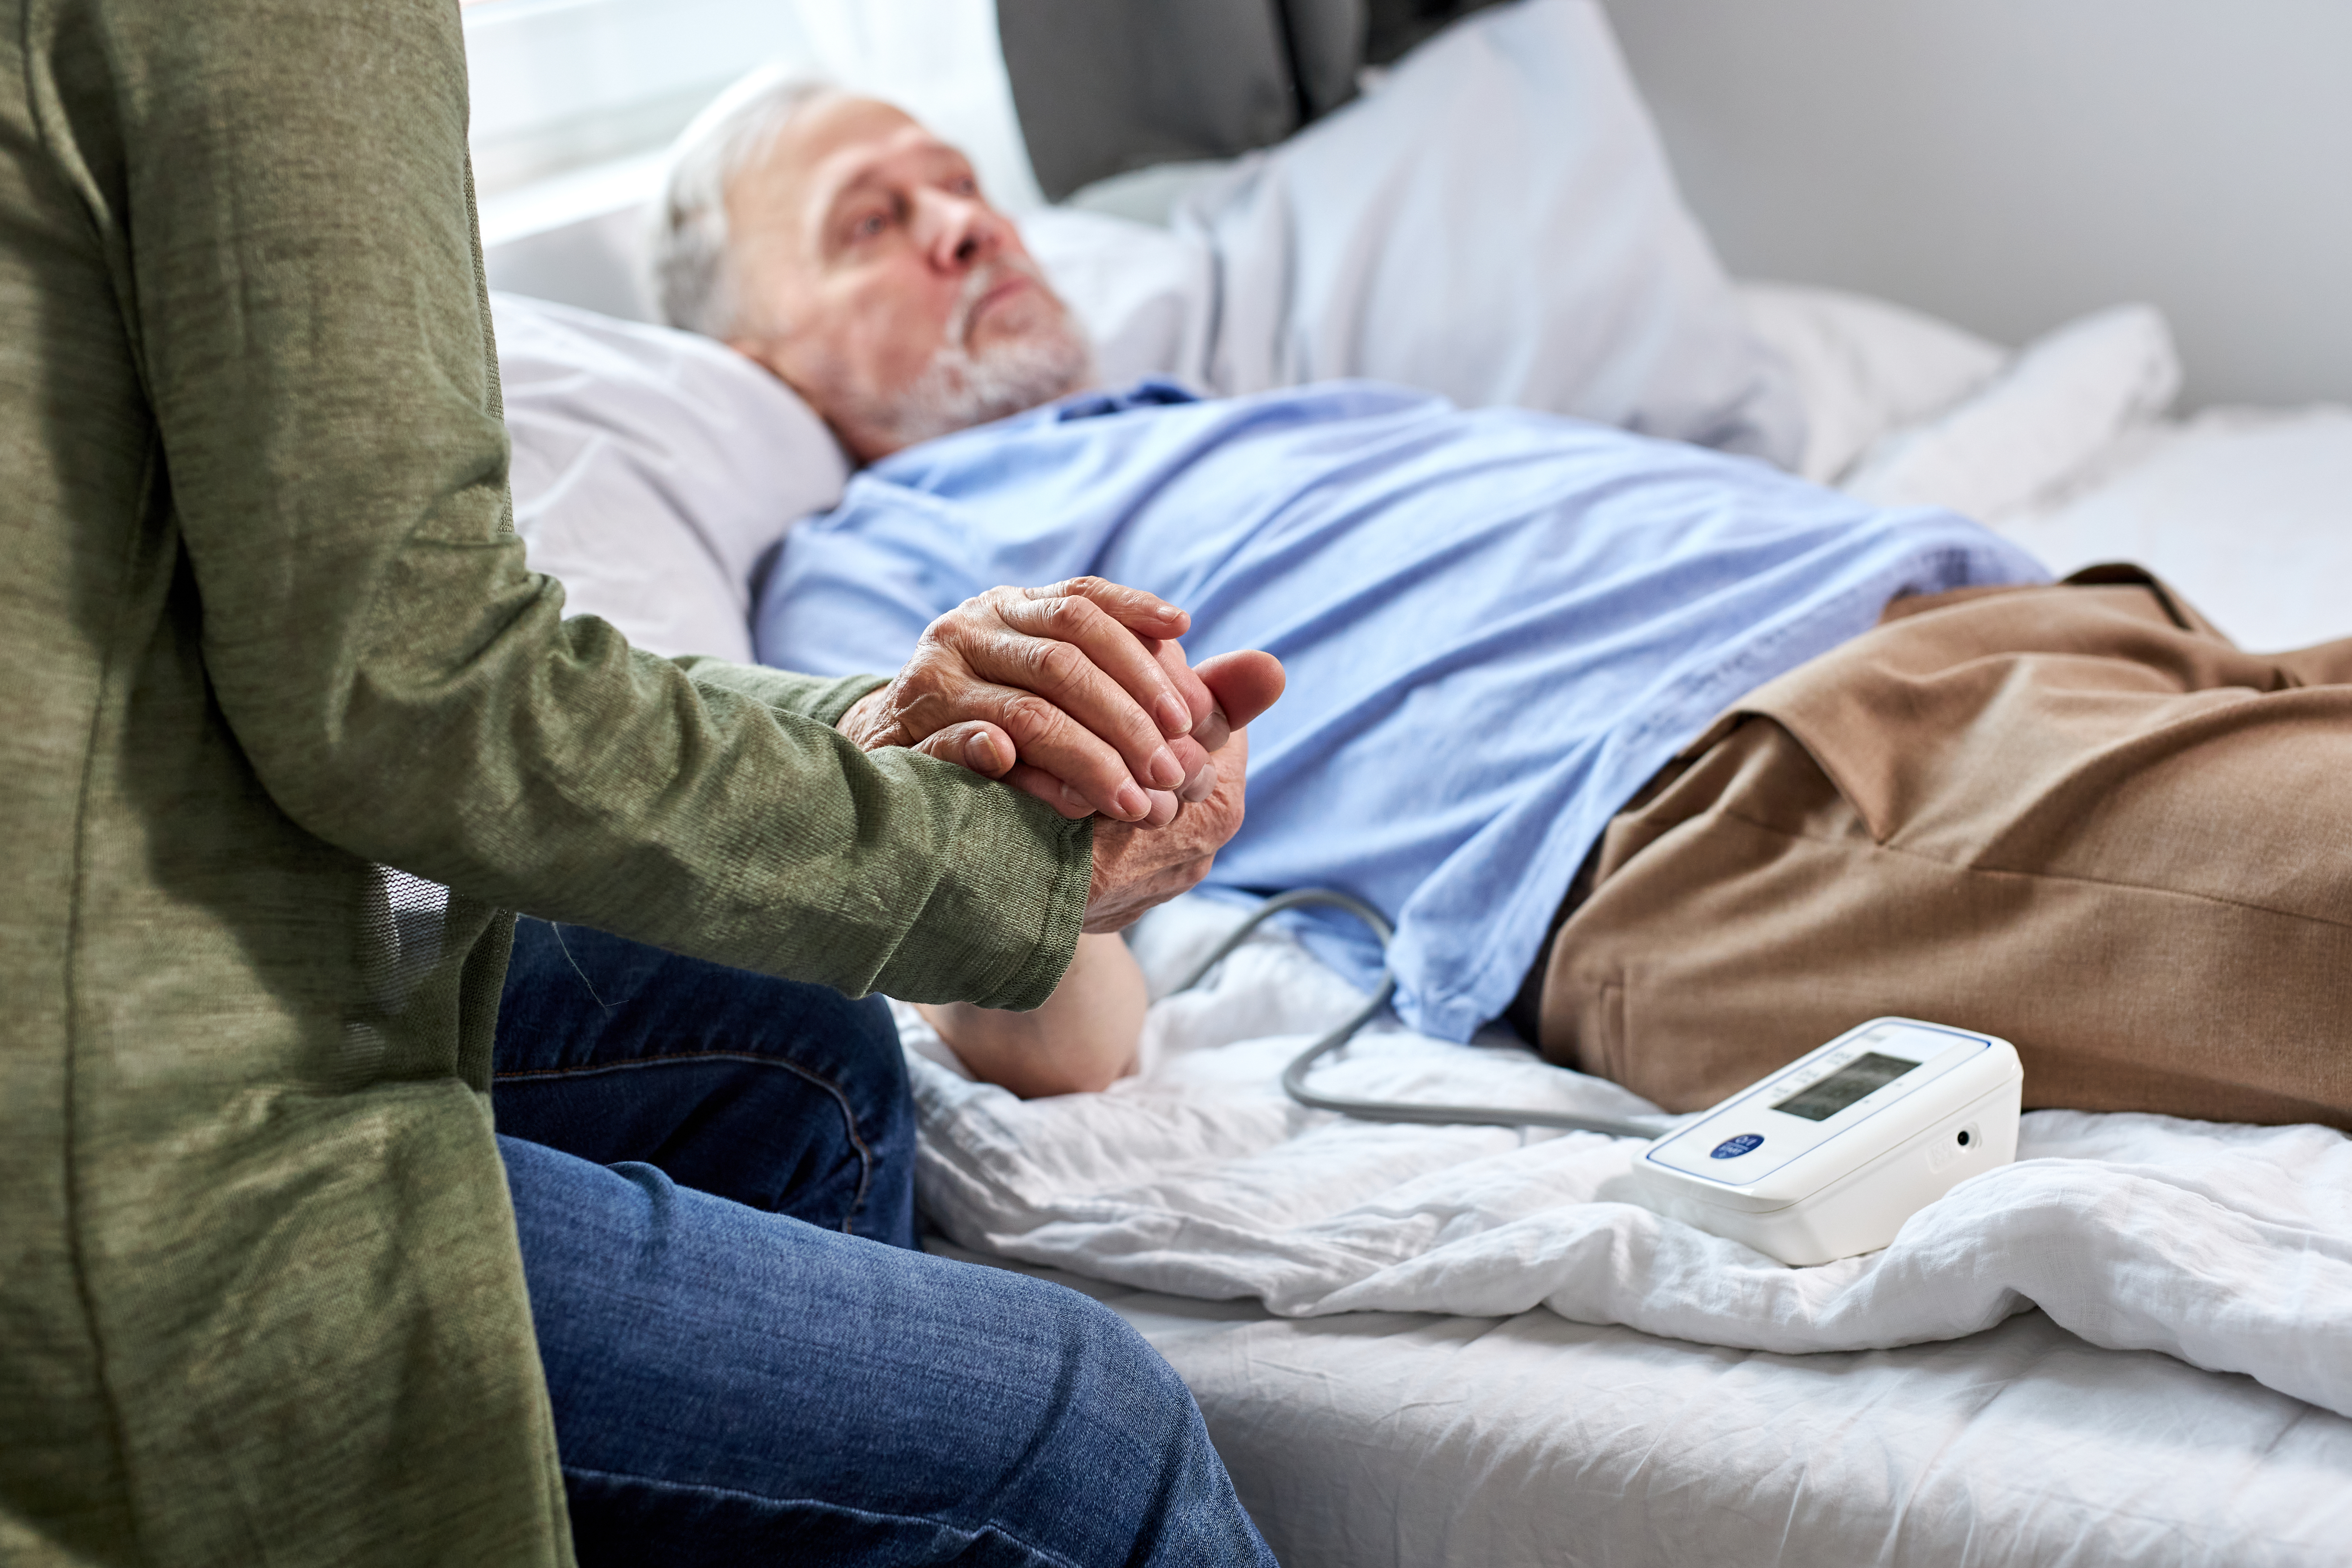 Un hombre en la cama de un hospital tomado de la mano de alguien. | Foto: Shutterstock